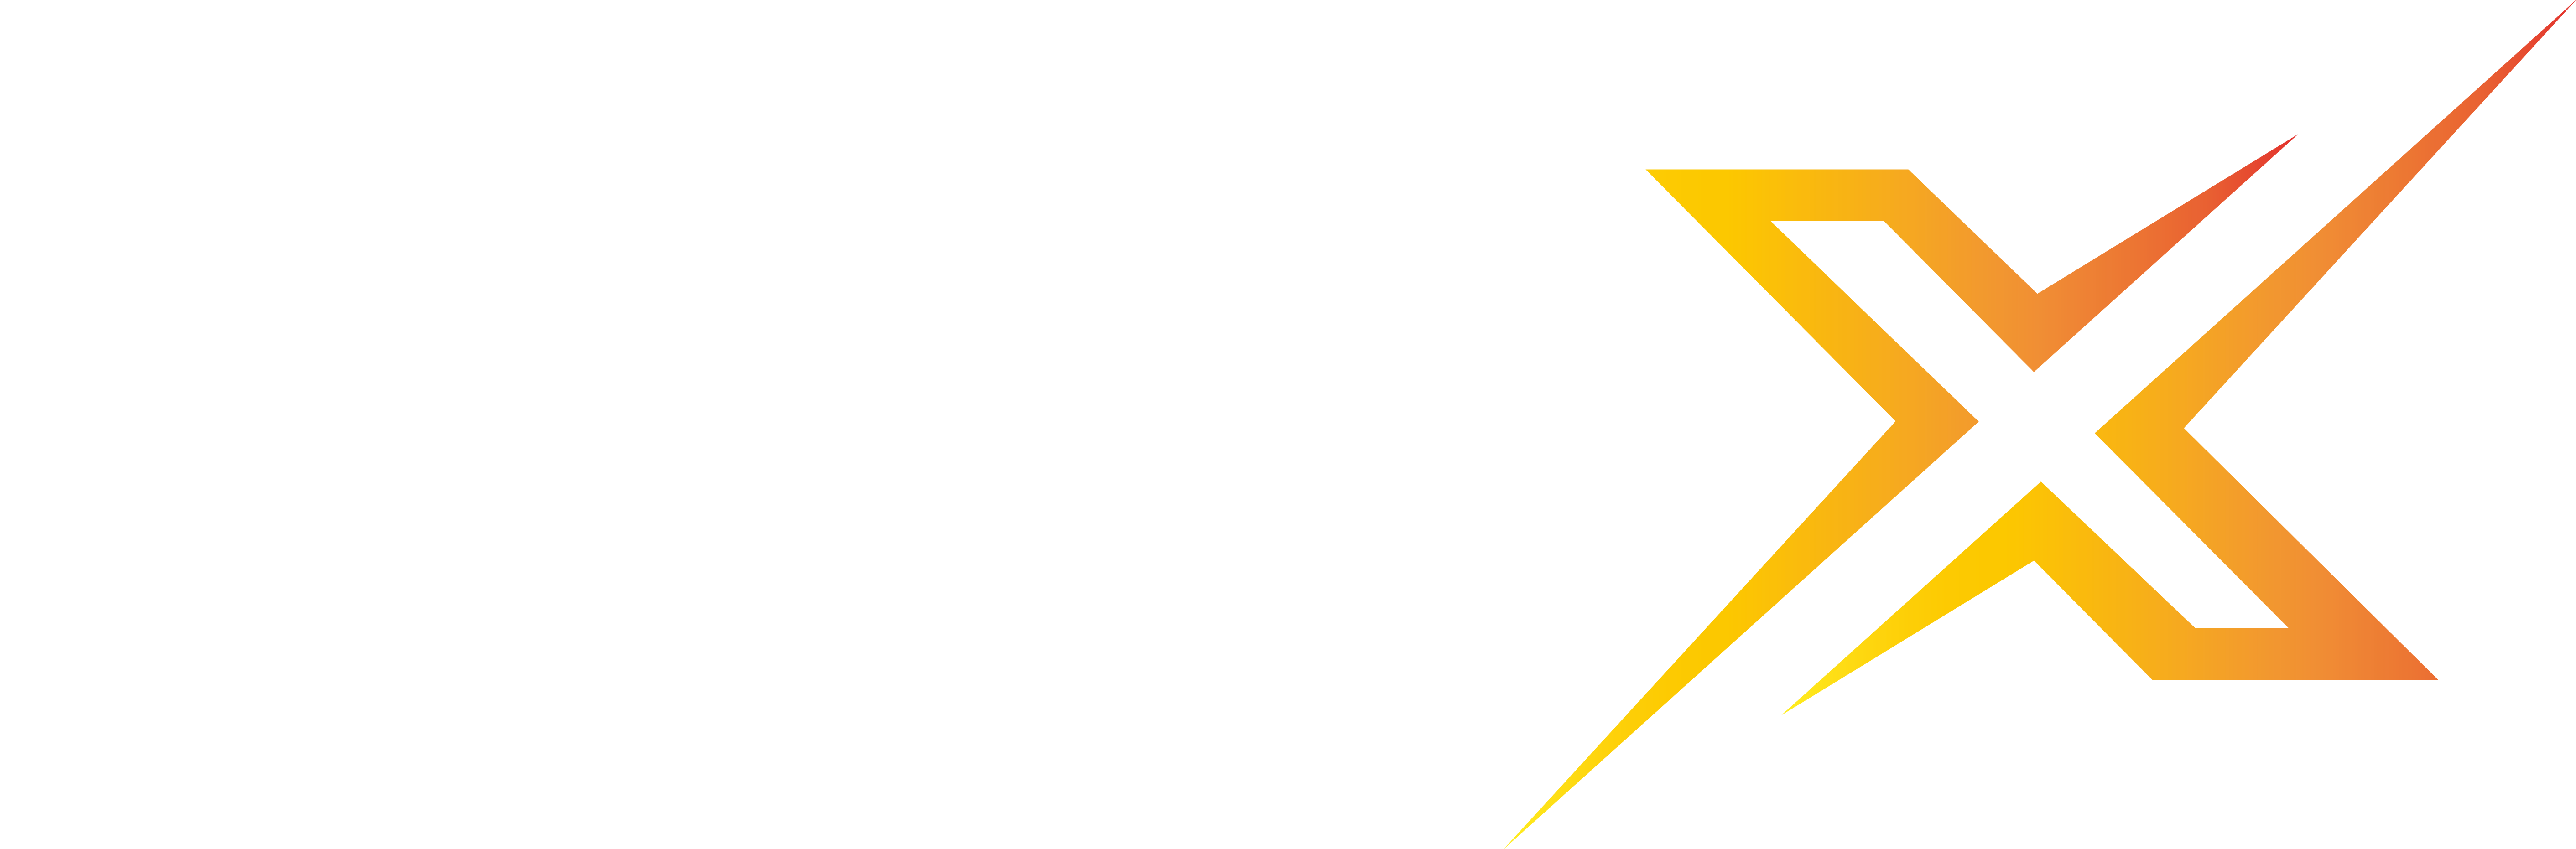 Turbo X - Escola do Perpétuo